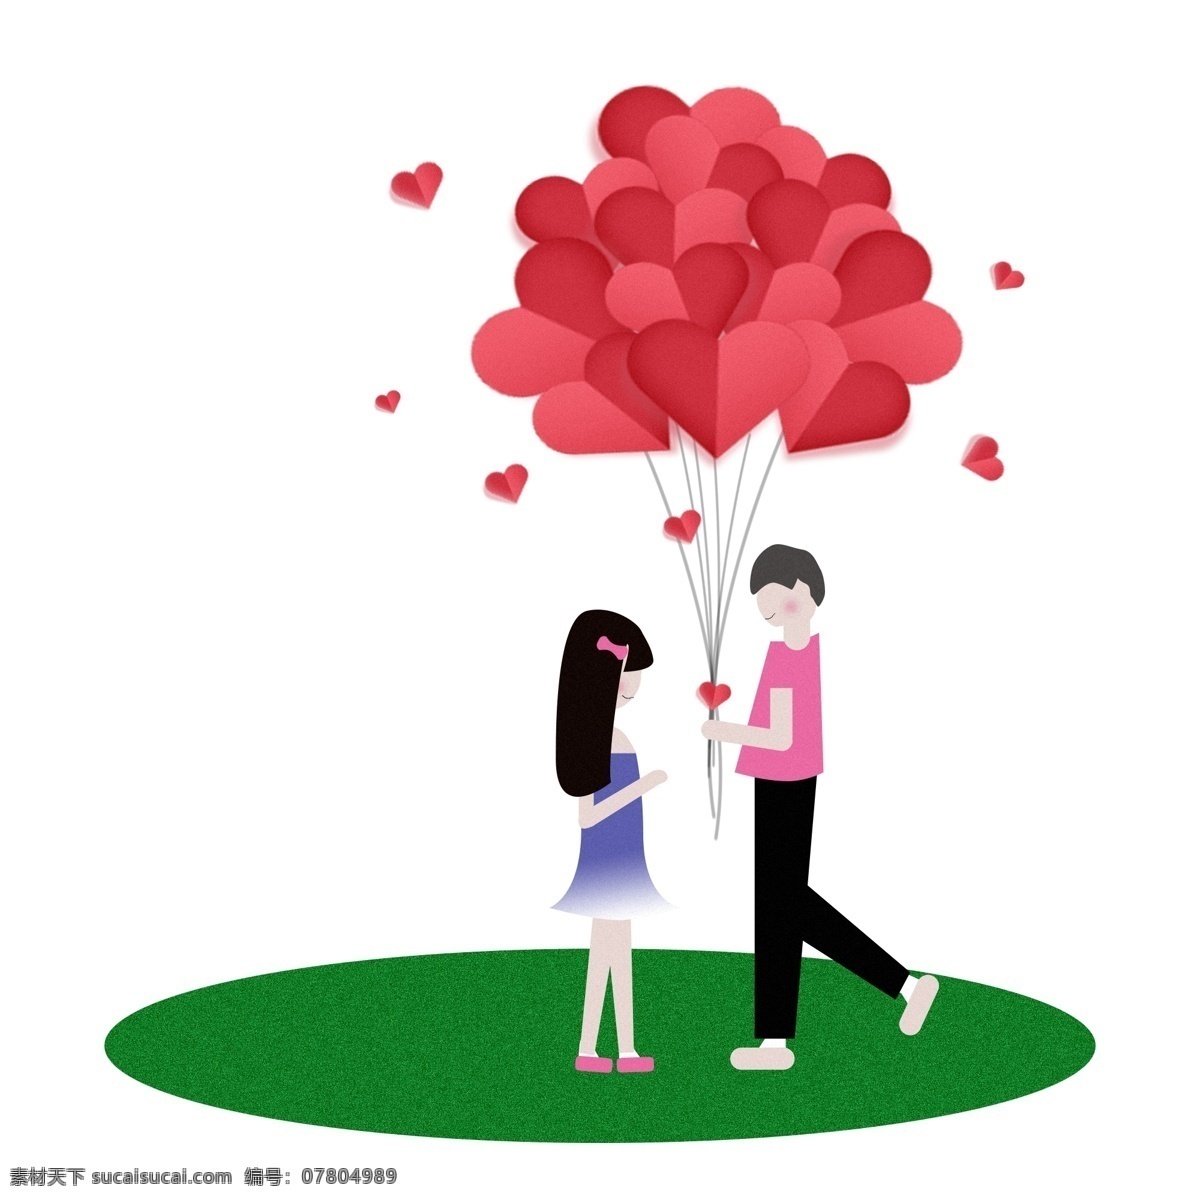 七夕 爱情 粉色 红 气球 礼物 爱心 情侣 七月初七 粉色气球 爱心气球